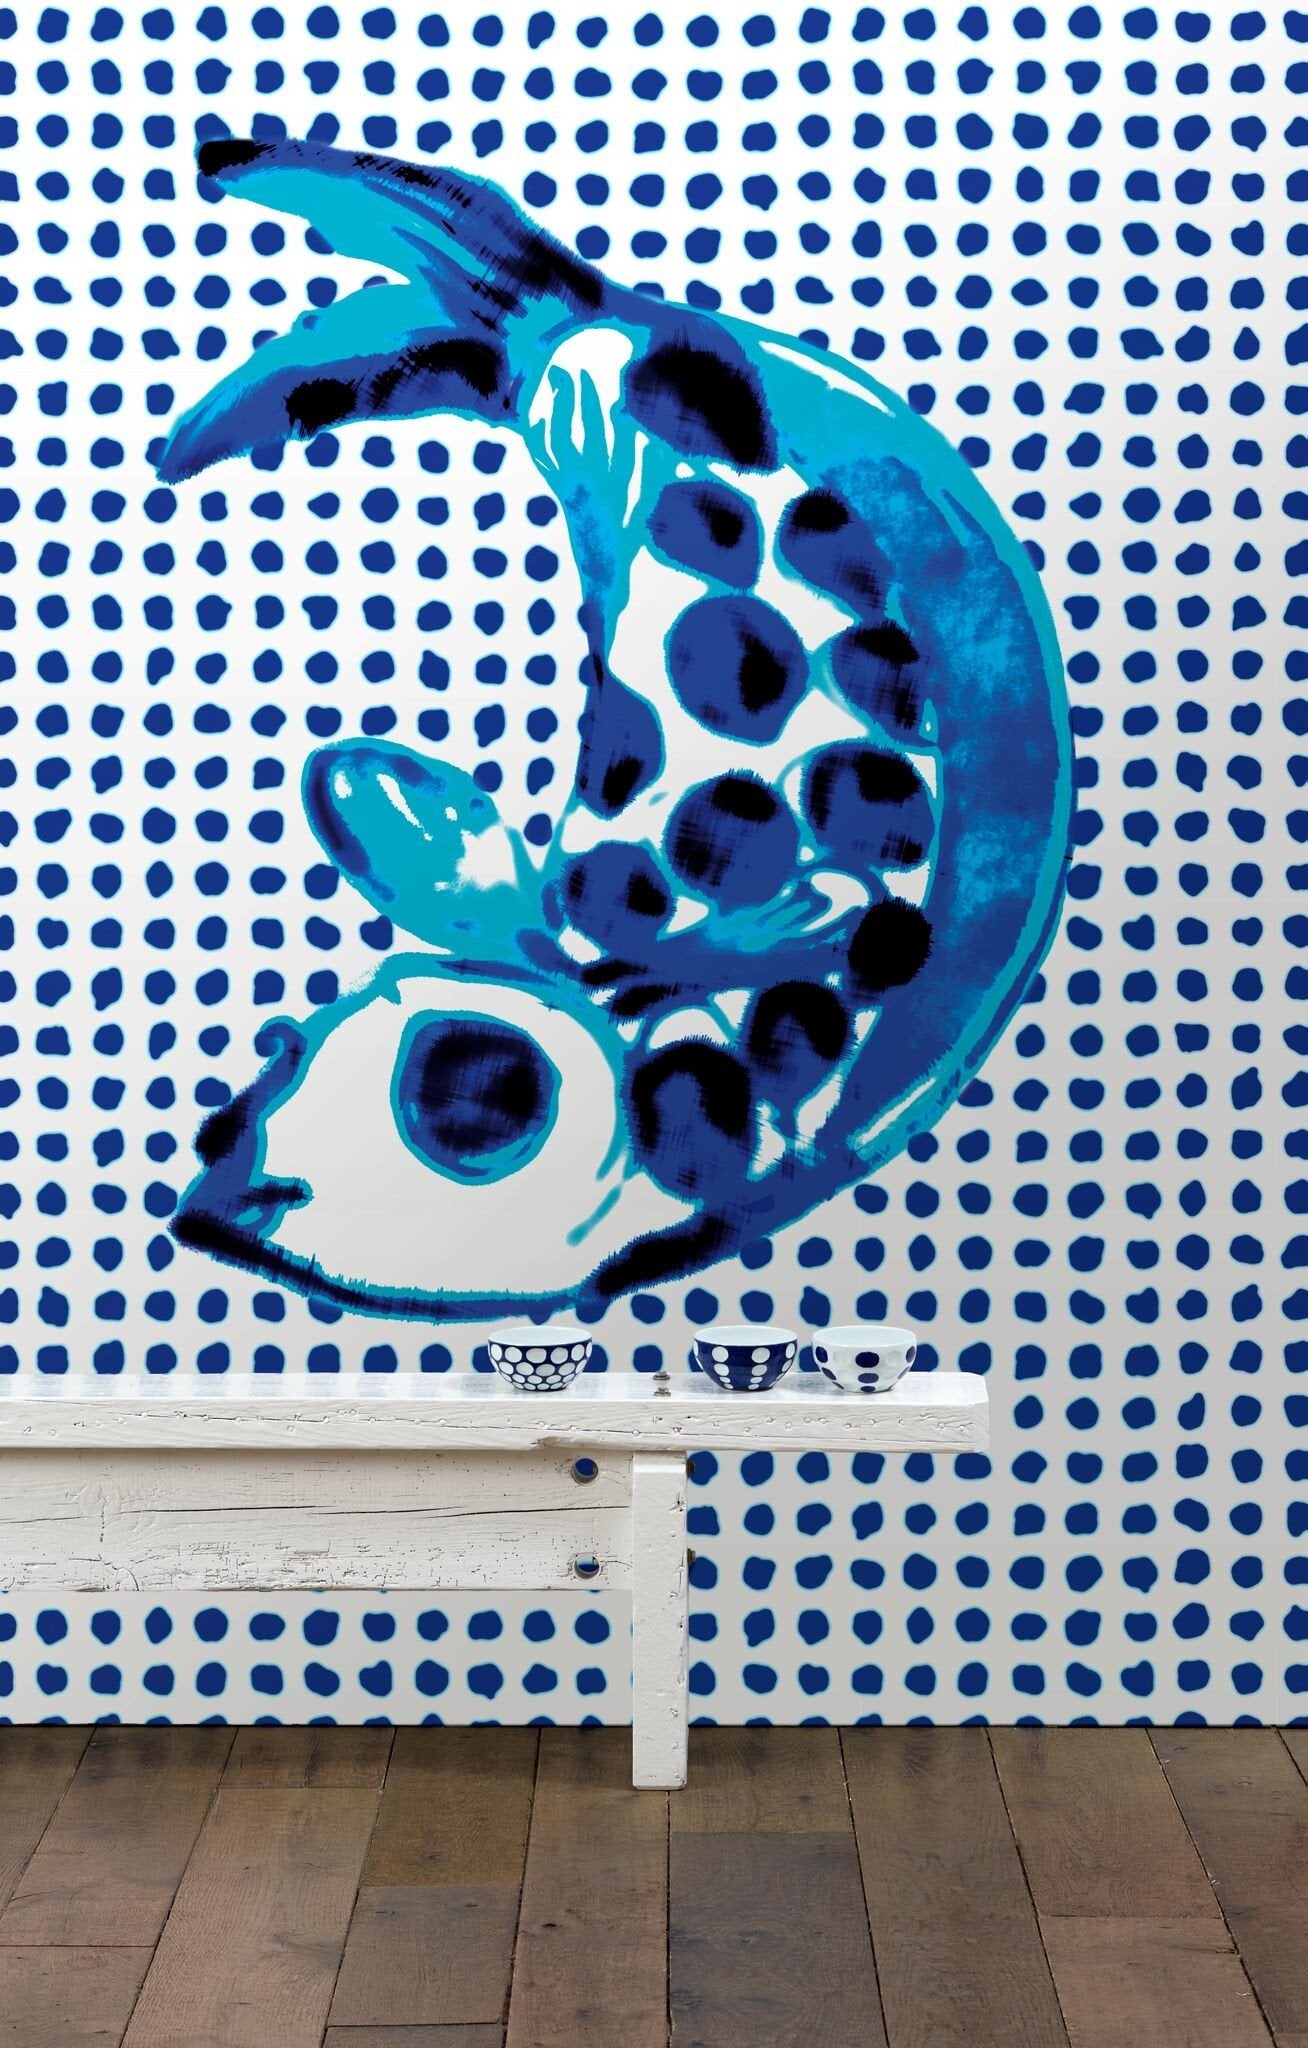 Fish & Dots Addiction Wallpaper PNO-01-NLXL-Contract Furniture Store